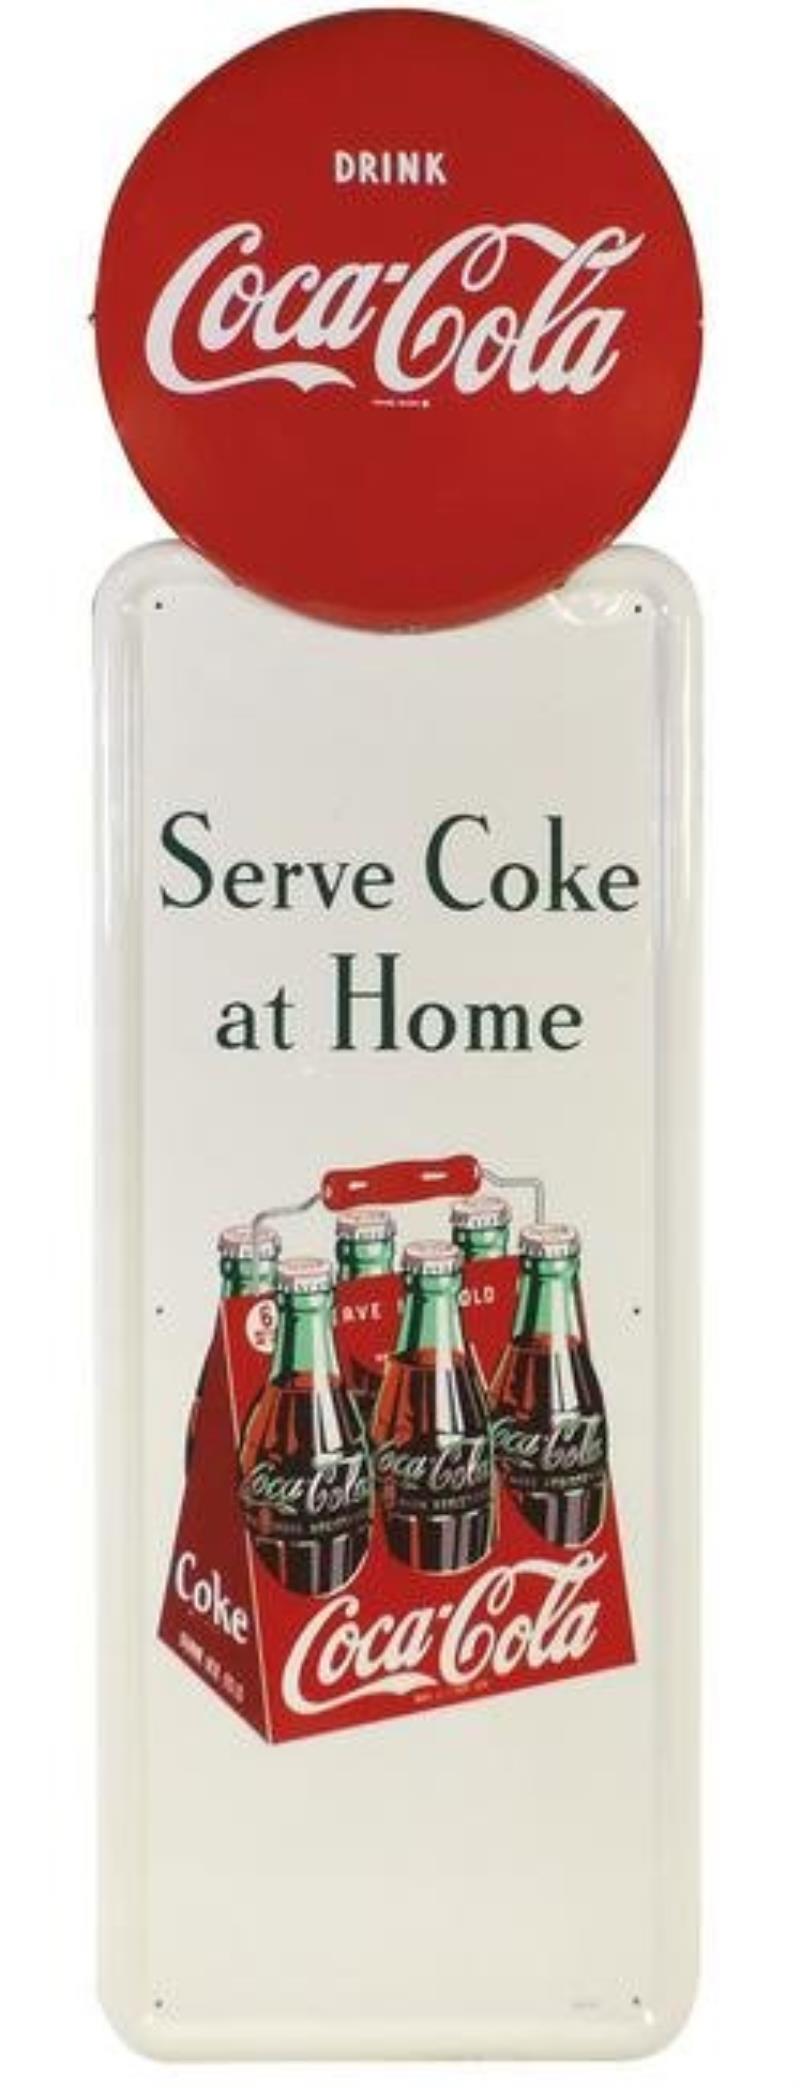 Coca-Cola Sign, Serve Coke at Home self-framed metal